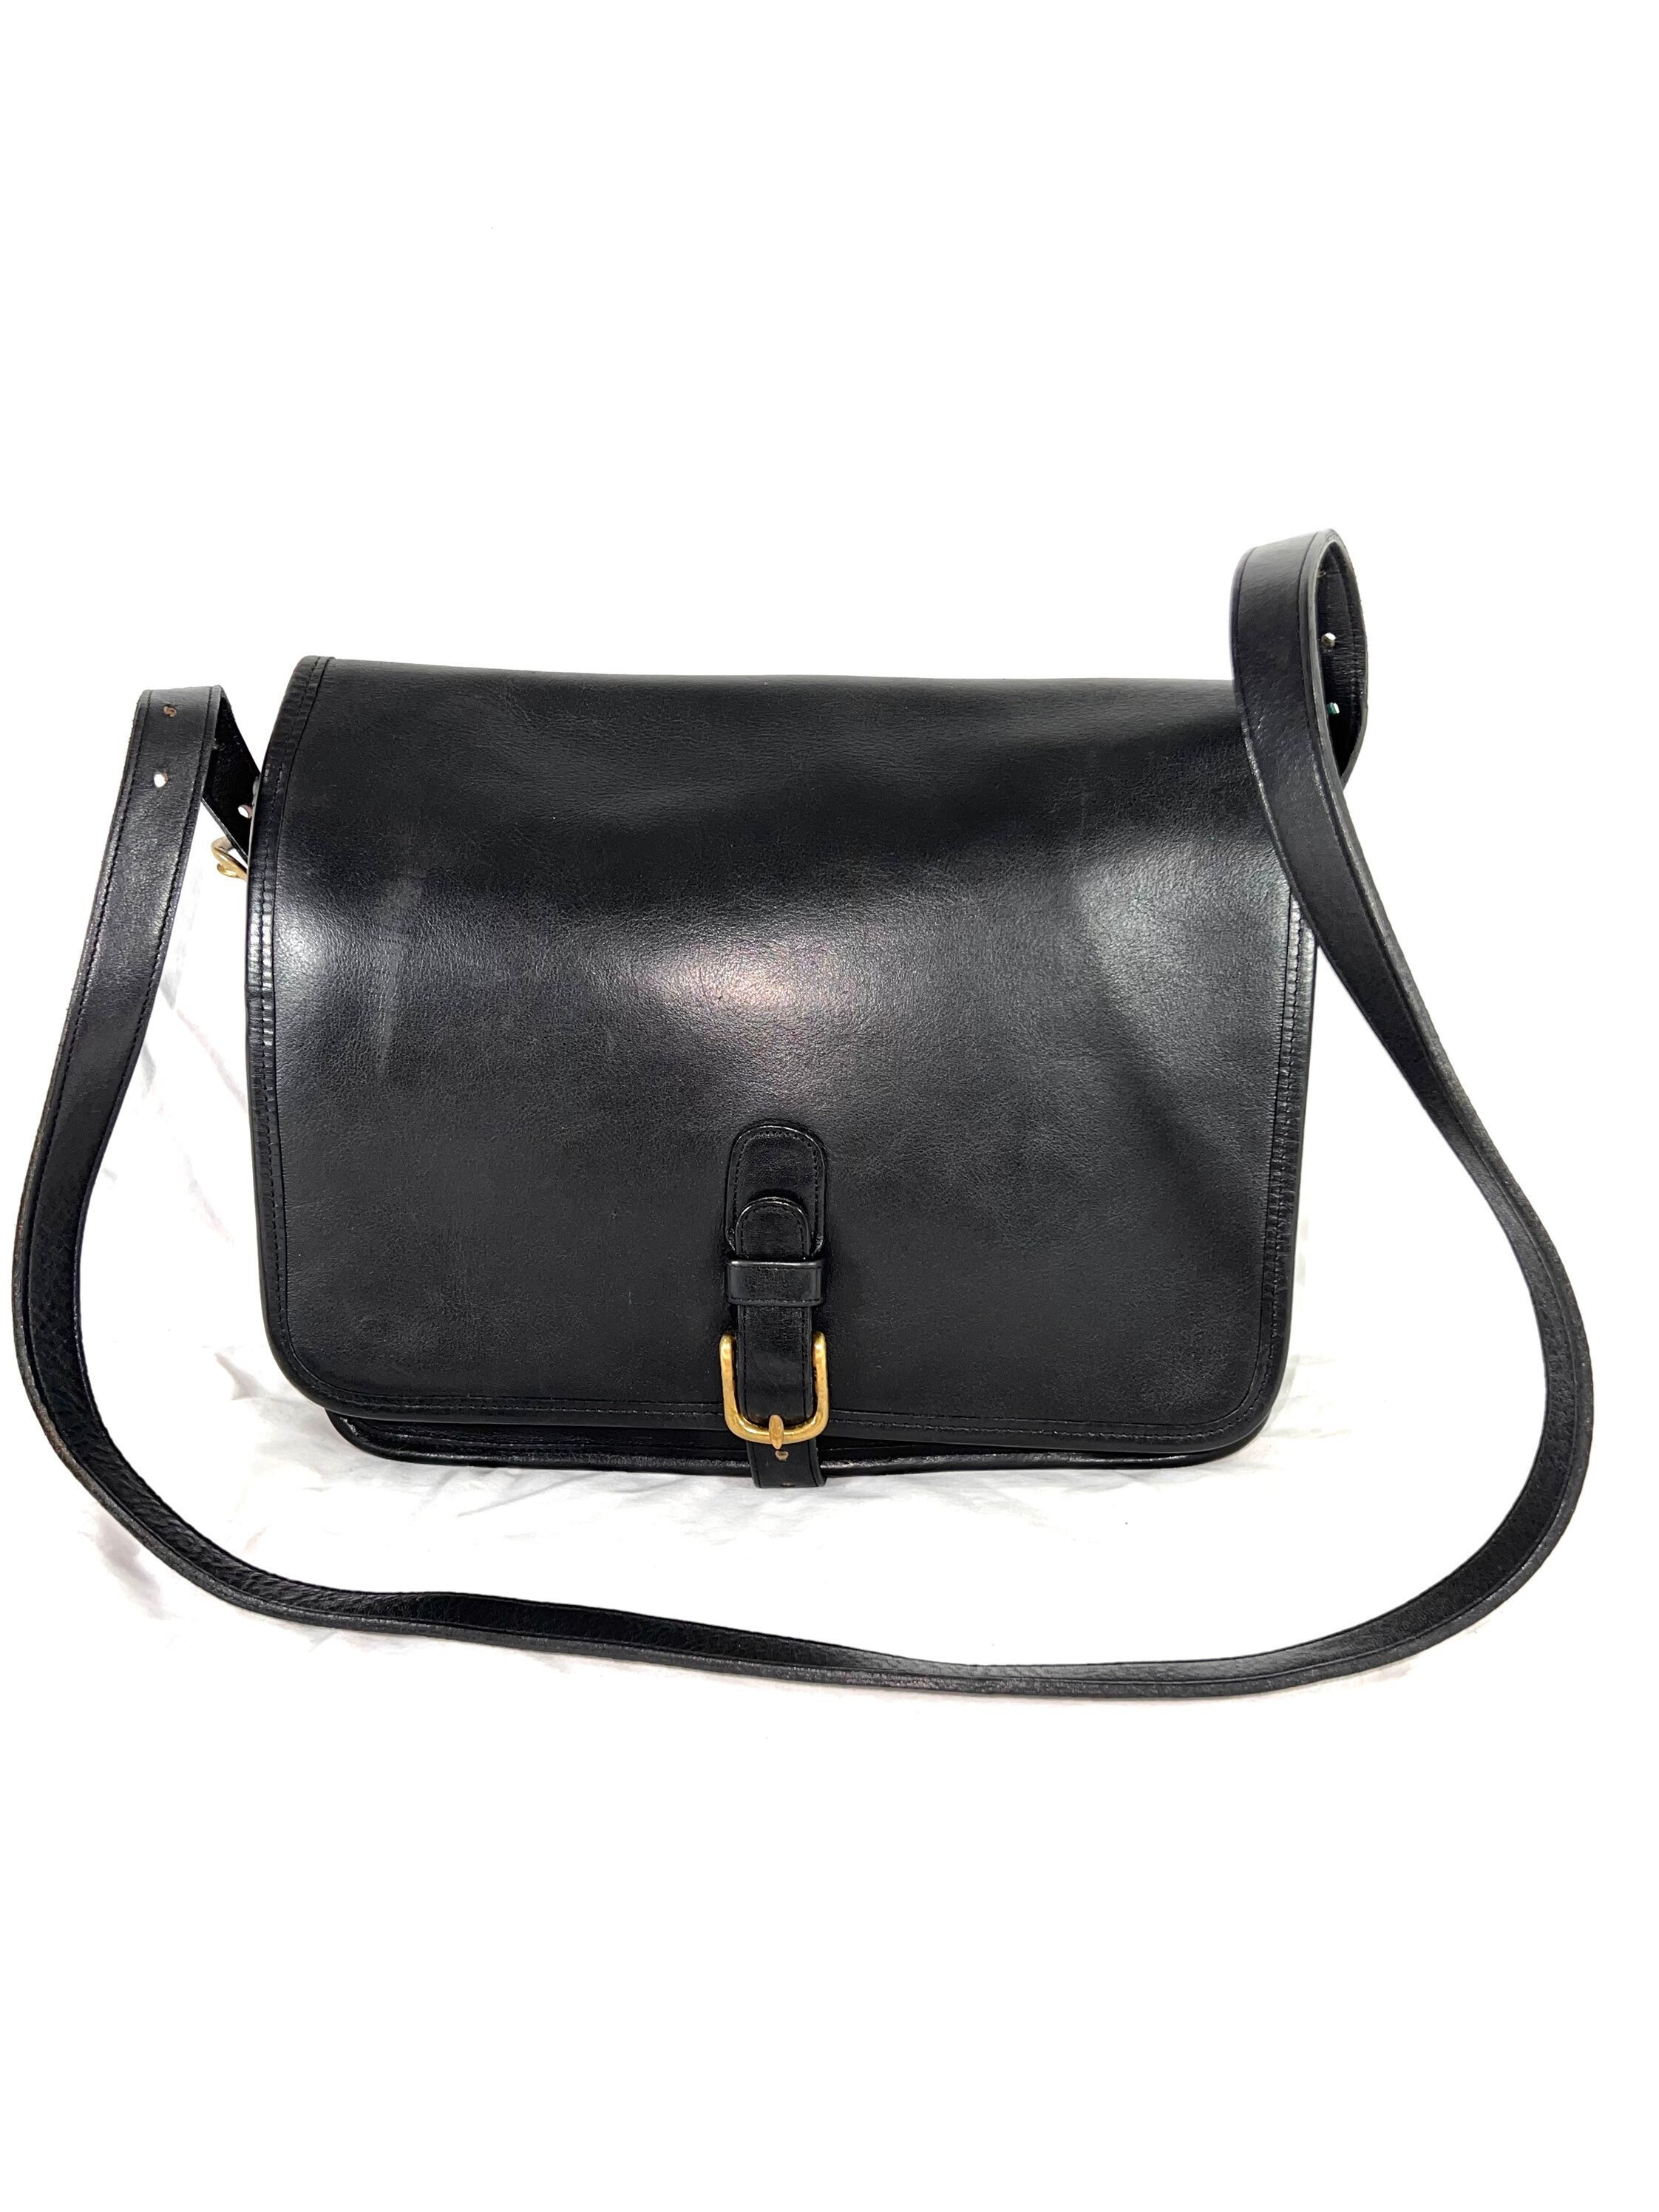 Vintage Coach Pocket Purse Clutch Dinky Penny Messenger Bag Black EUC #9755  – Sacs Magnifiques